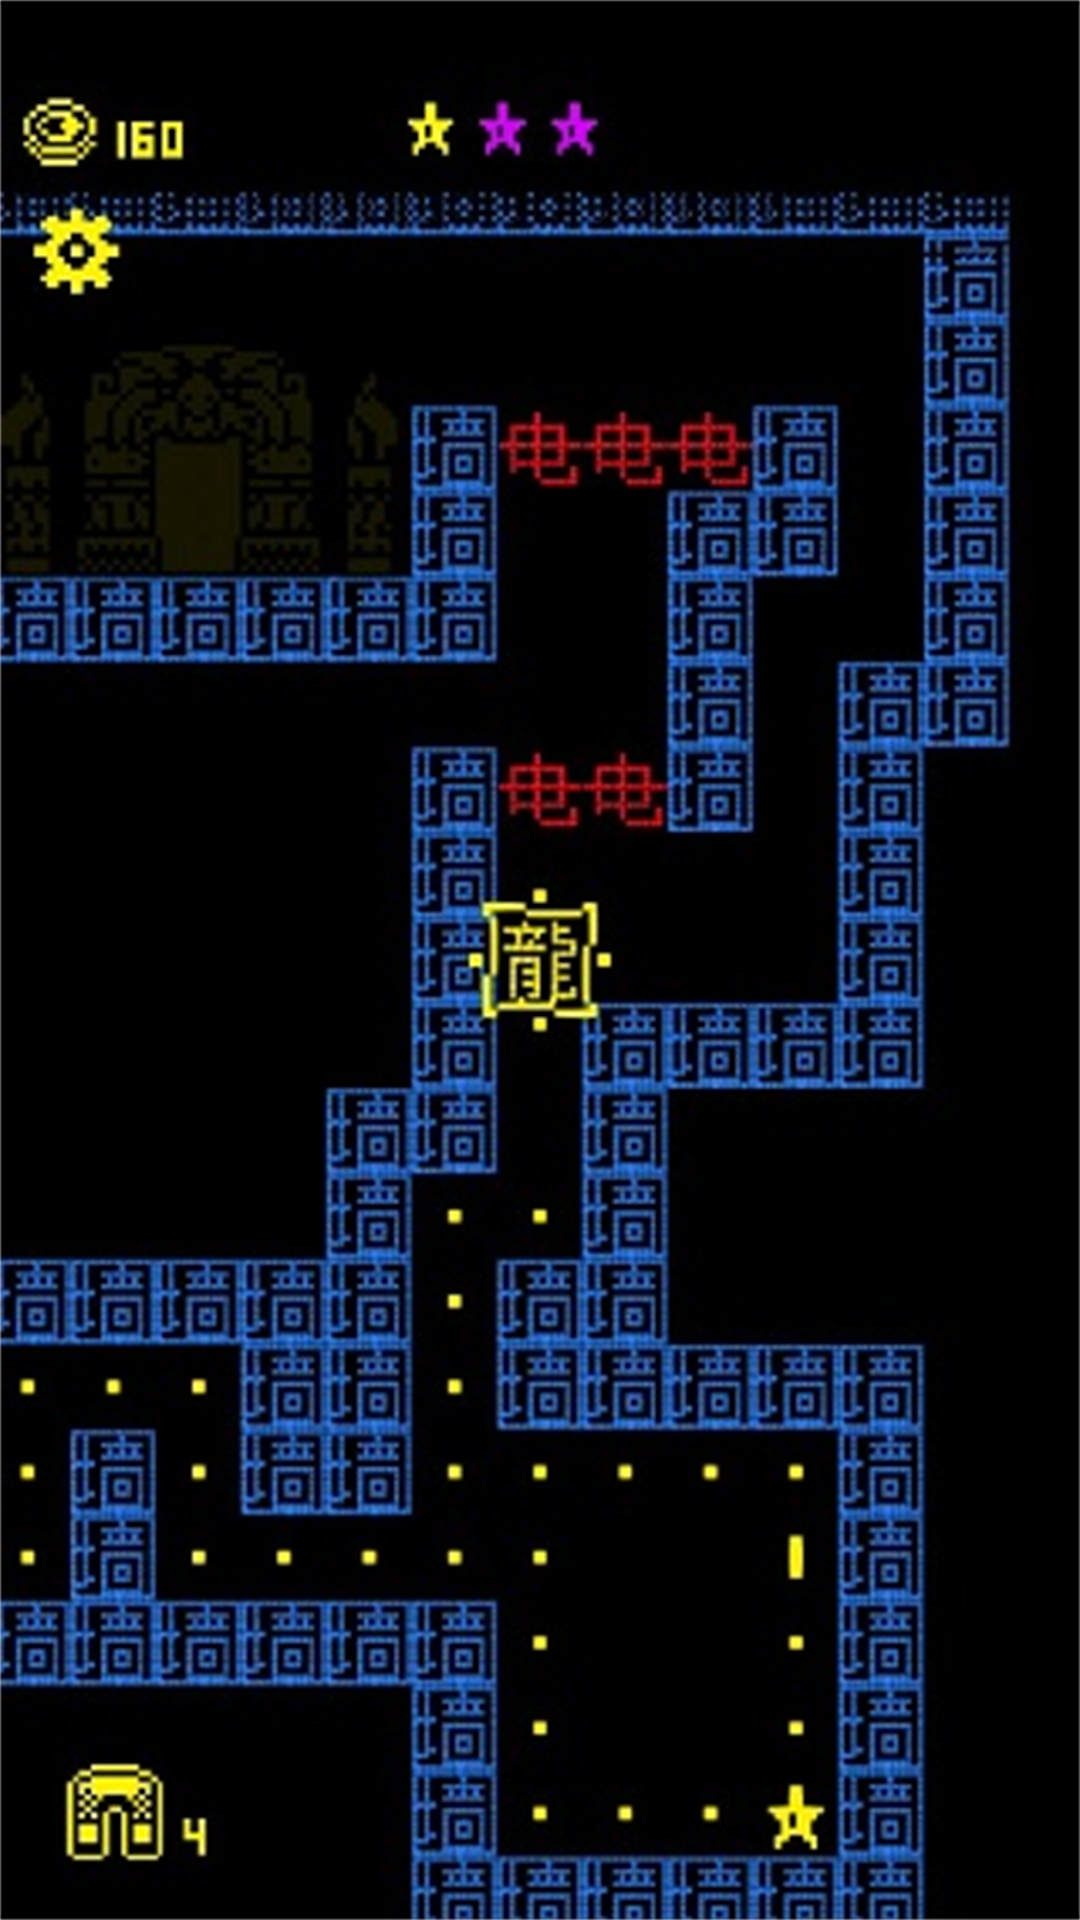 迷宫逃生王者游戏下载,迷宫逃生王者游戏安卓版 v1.0